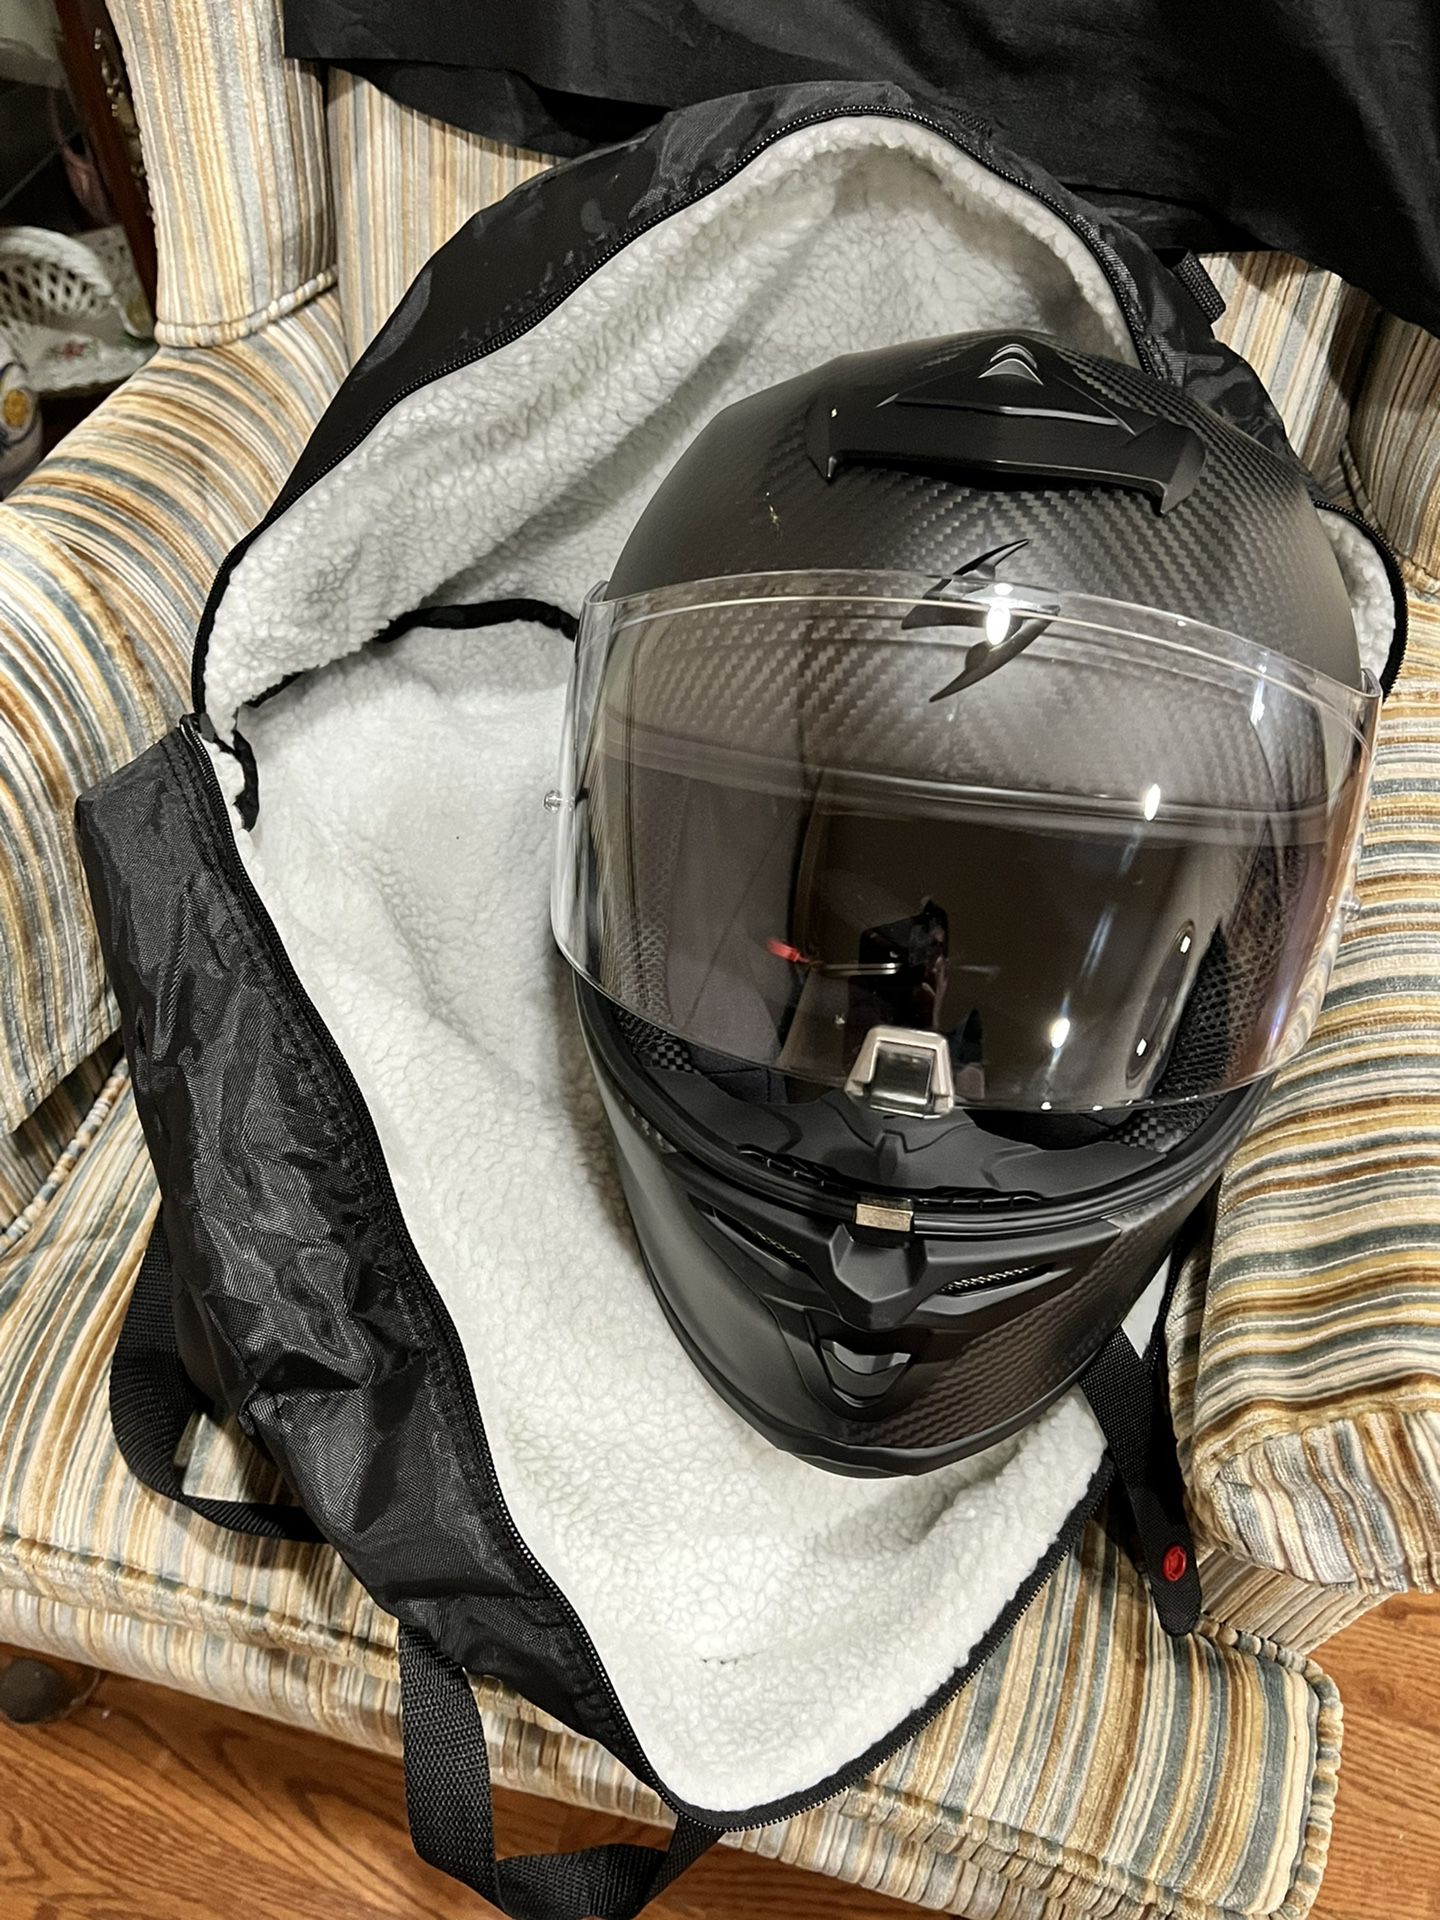 Beautiful new Scorpion motorcycle Helmet , Gloves & Bag!  